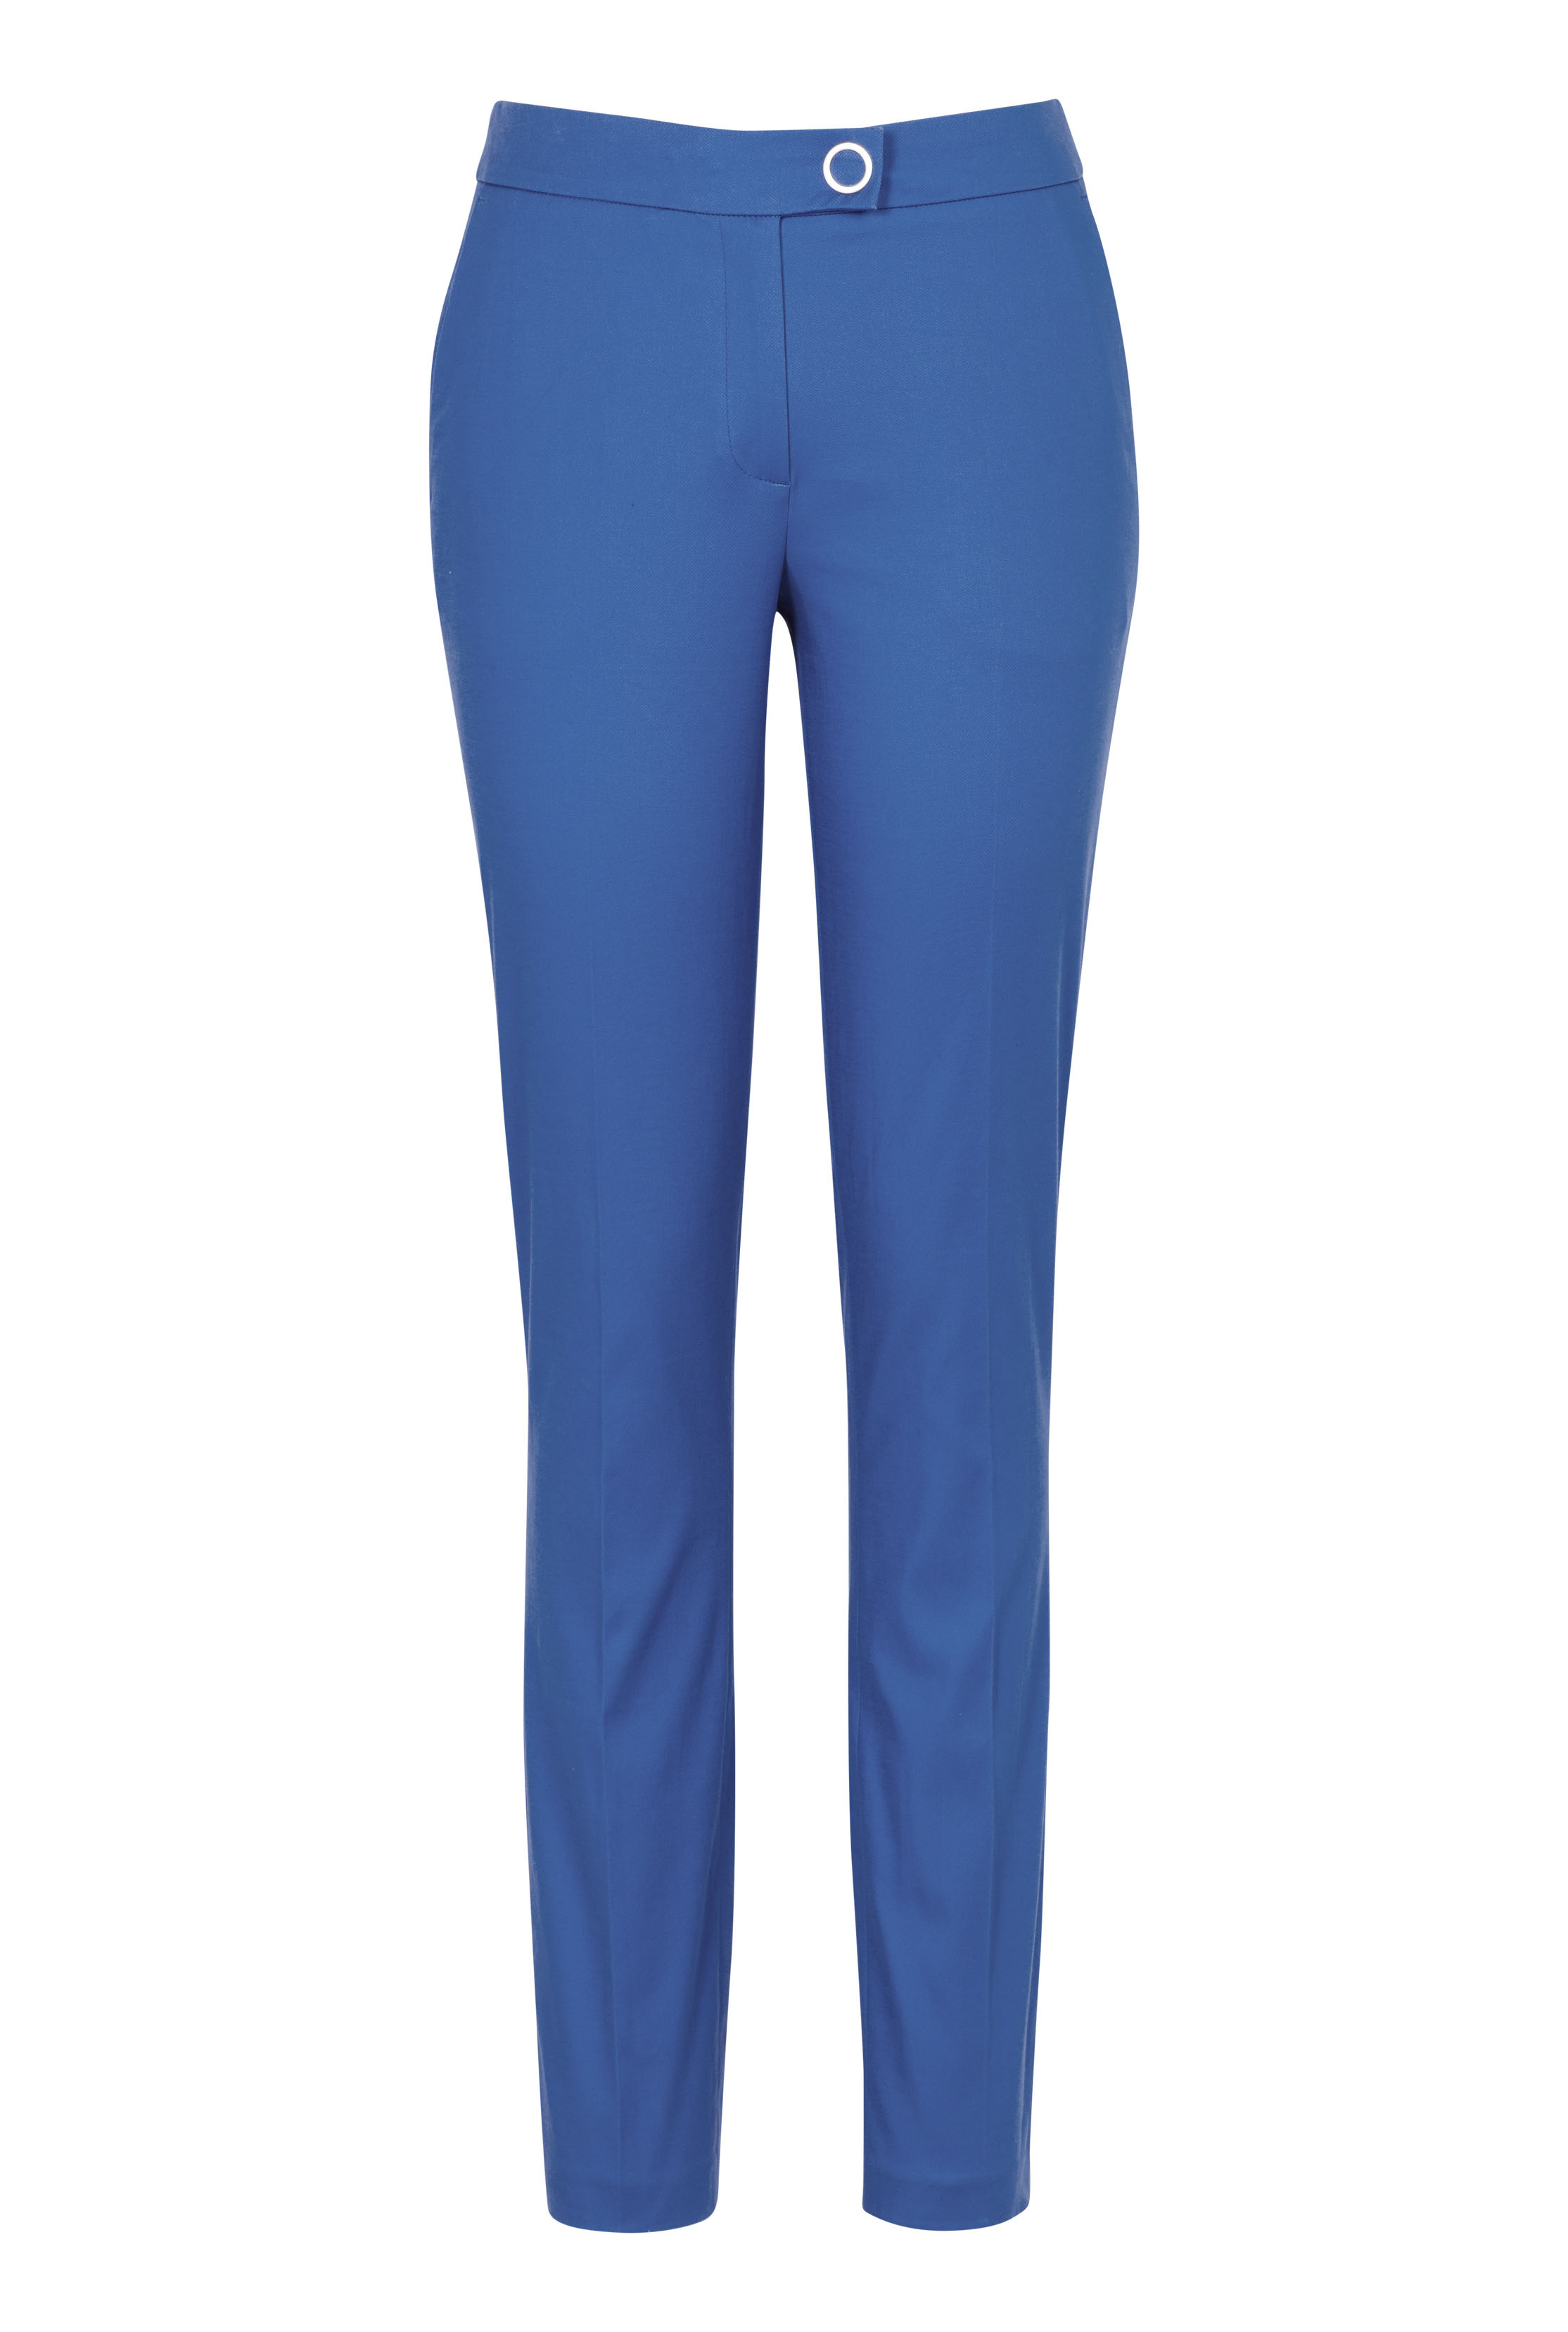 Blue Cotton Sateen Slim Leg Trouser | Long Tall Sally